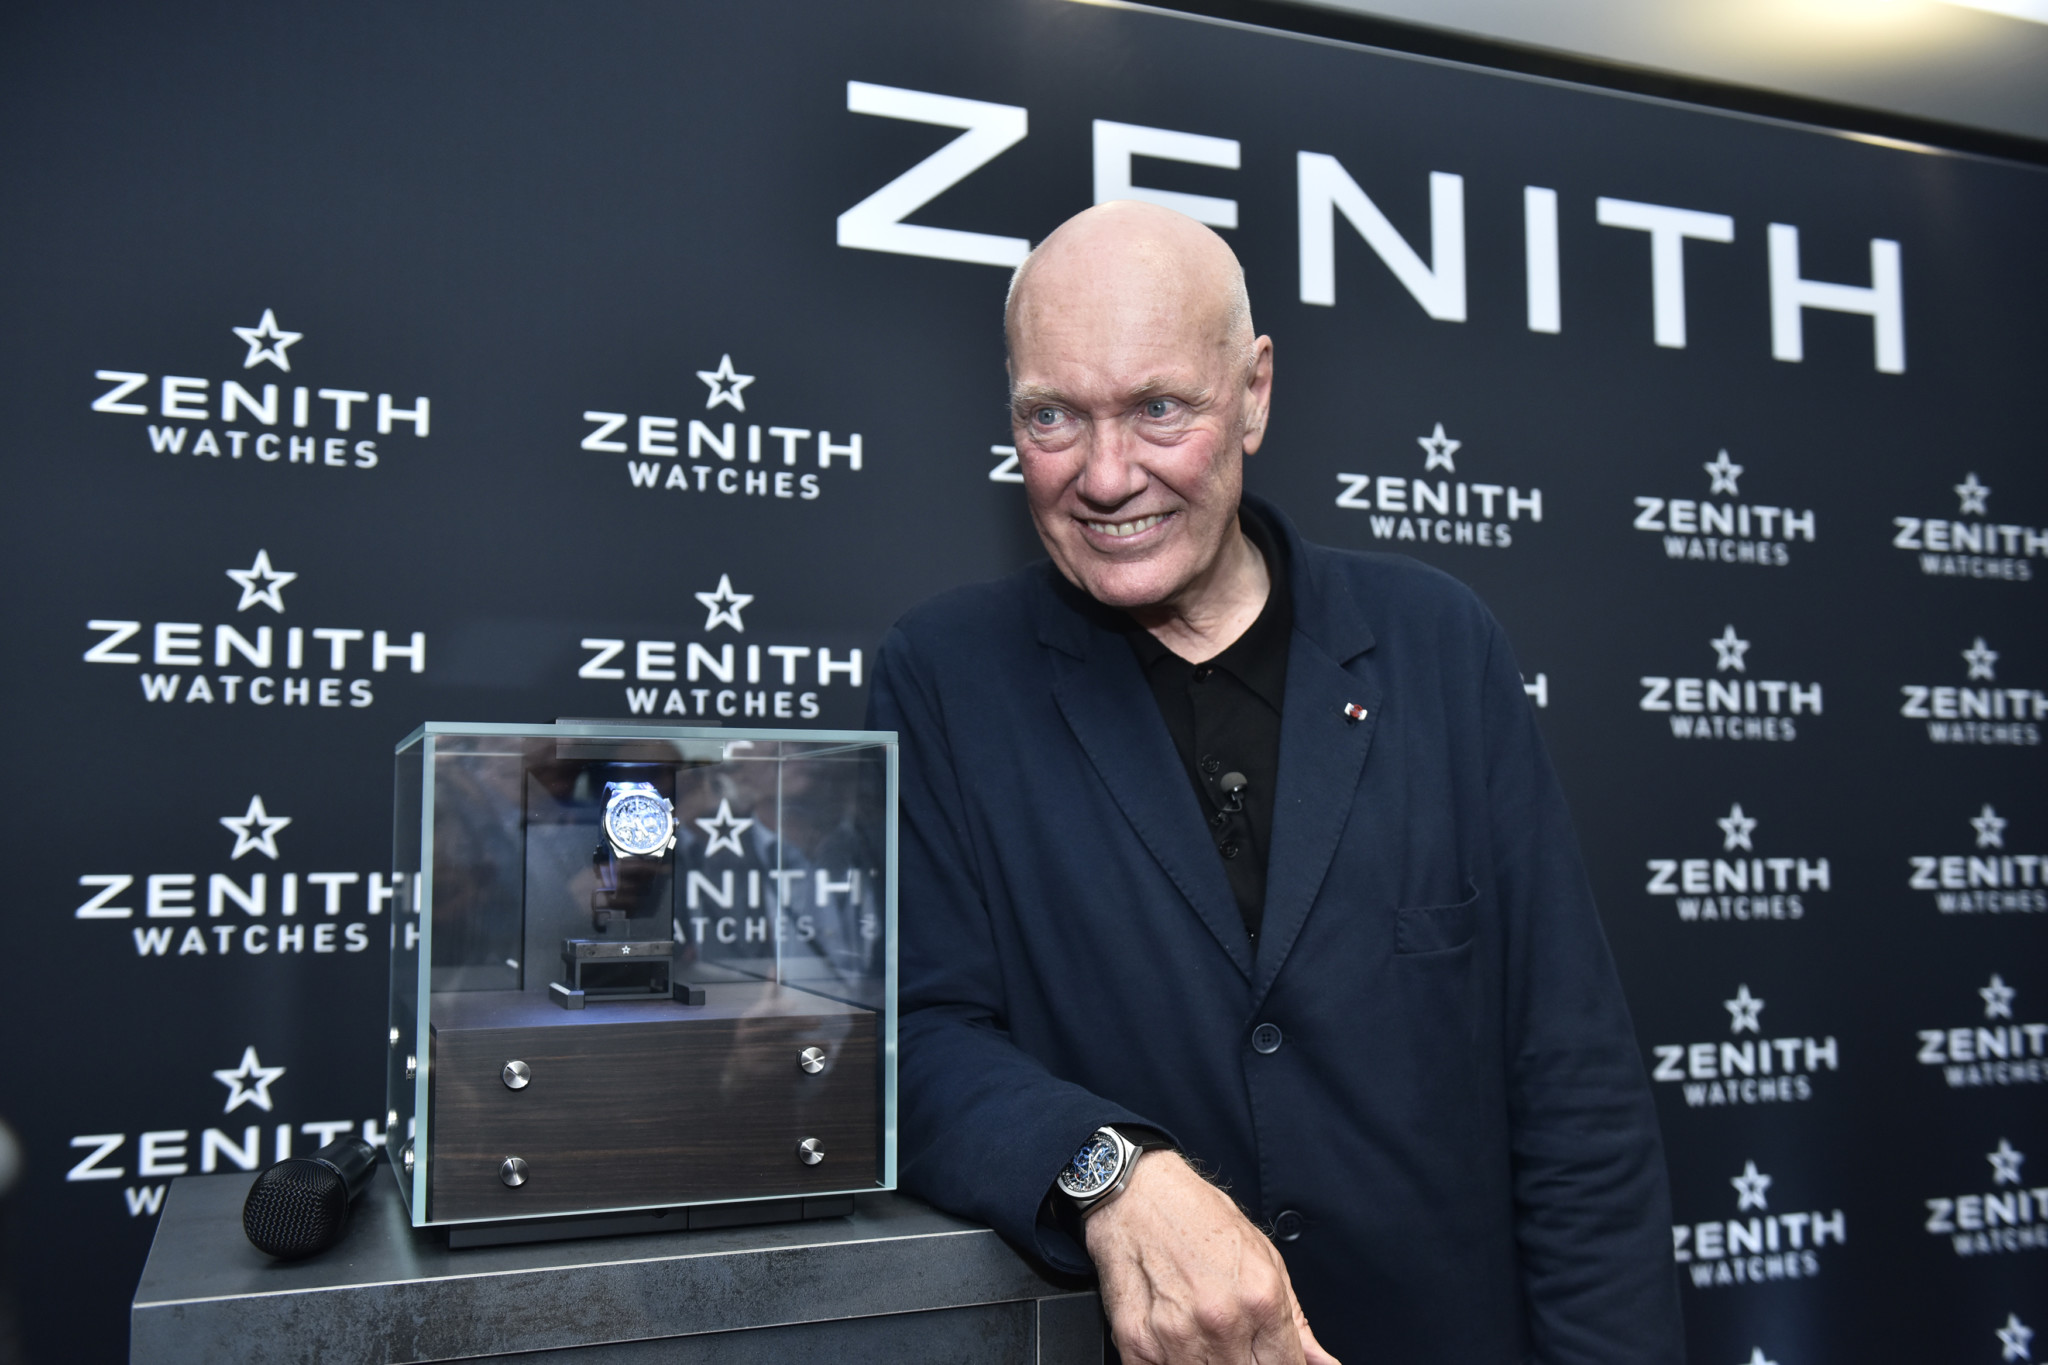 THE BIG INTERVIEW: Jean-Claude Biver Rebuilds Zenith